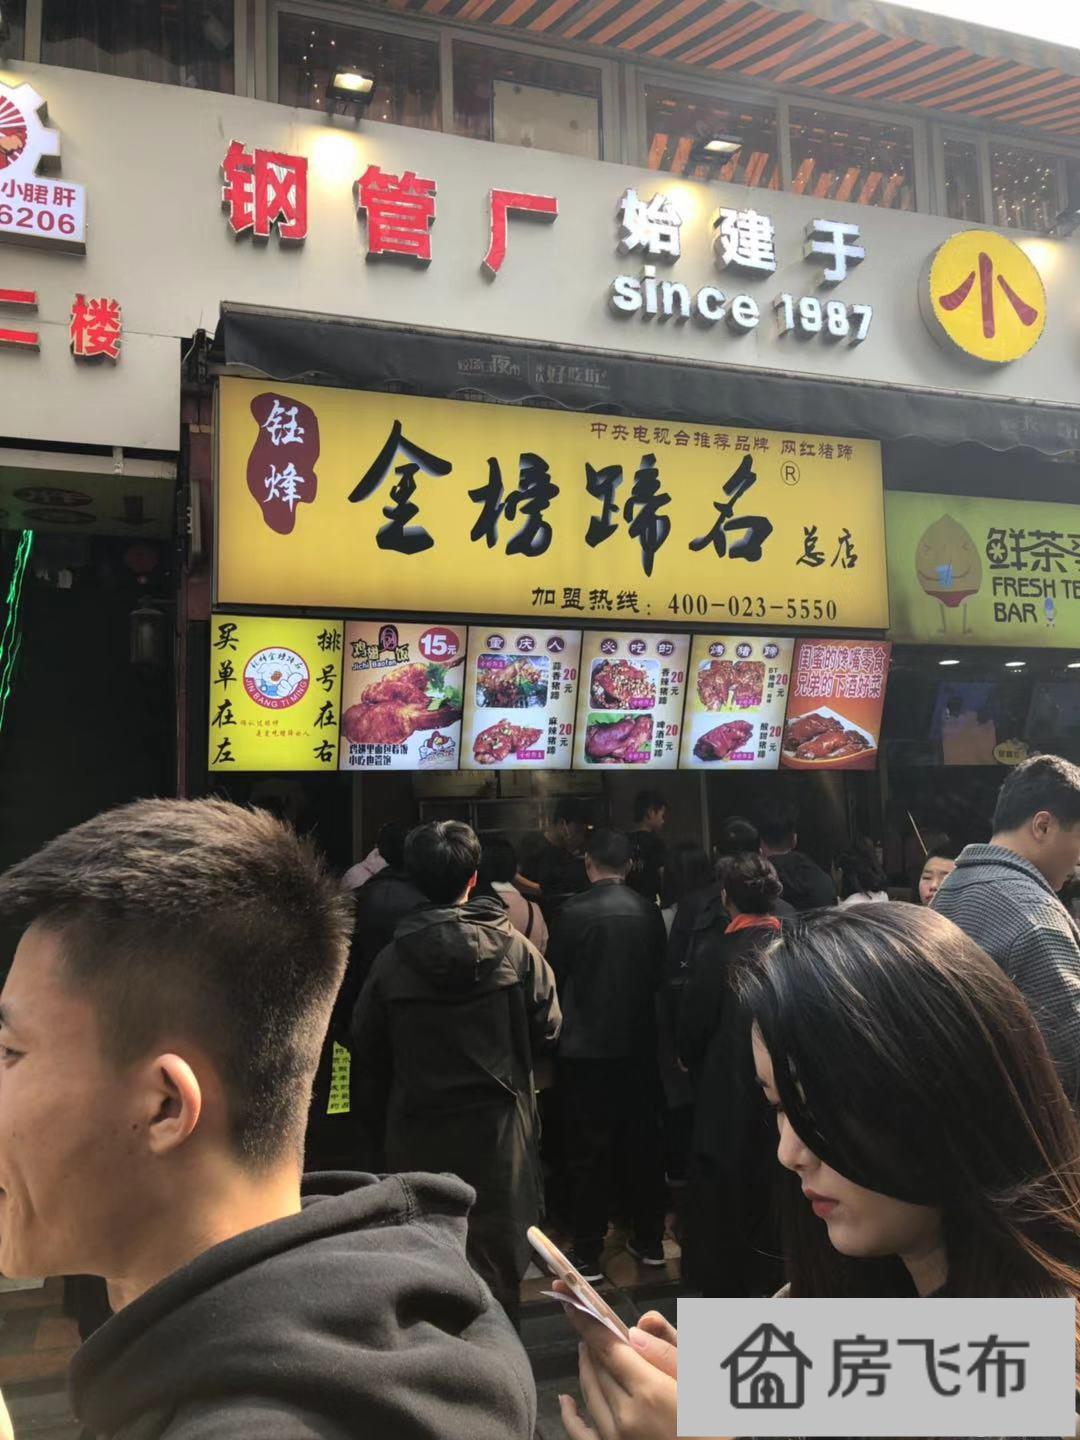 (出售) 小面积餐饮门面 紧邻江汉路 商圈成熟 业主缺钱急售